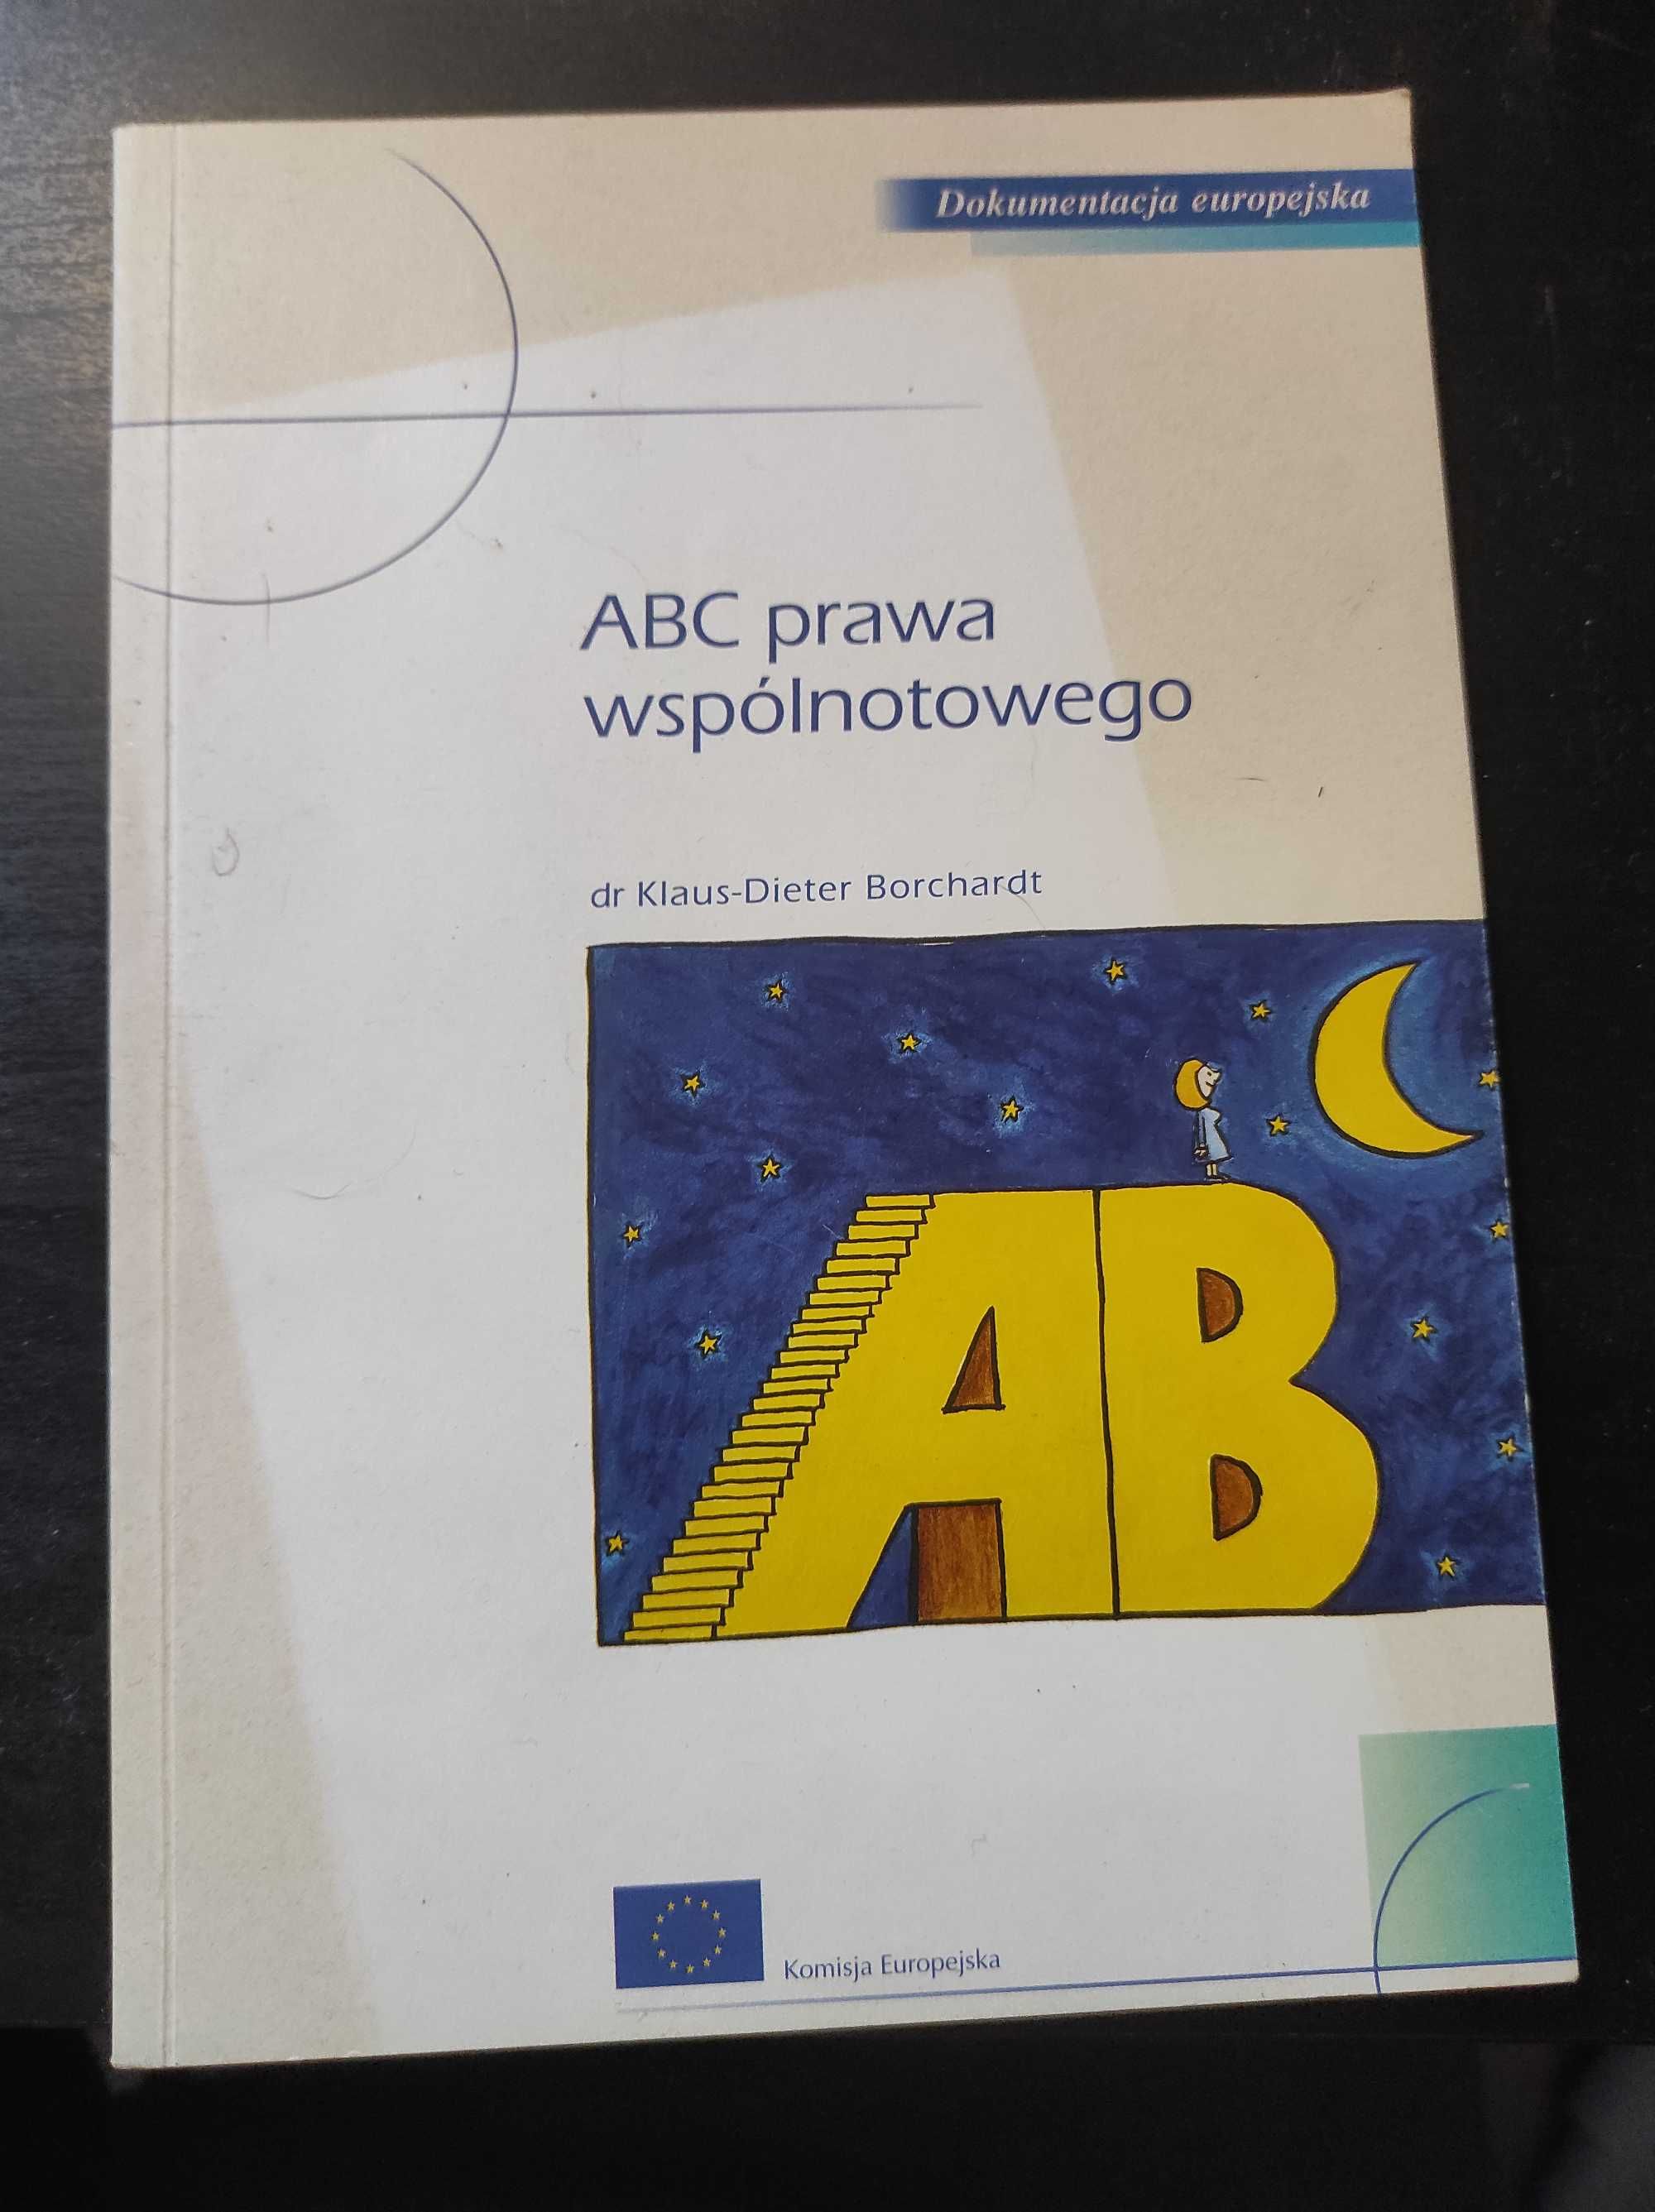 ABC prawa wspólnotowego